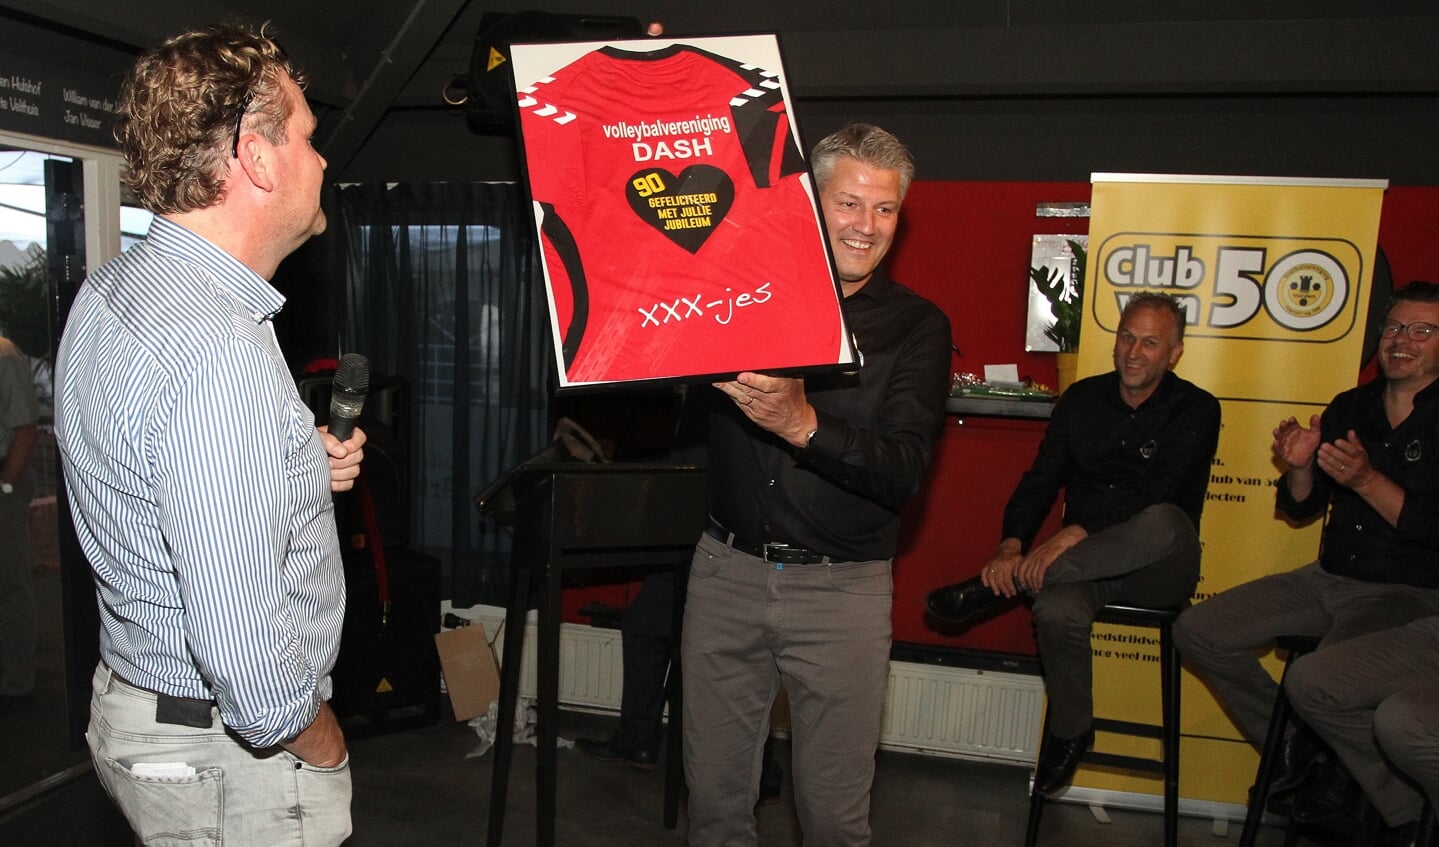 Namens de Vordense volleybalvereniging Dash overhandigde voorzitter Rein Bruinsma (l) aan voorzitter Marc van der Linden van VV Vorden een prachtig liefdesvol rood-zwart volleybalshirt. Foto: Johan Bolink.